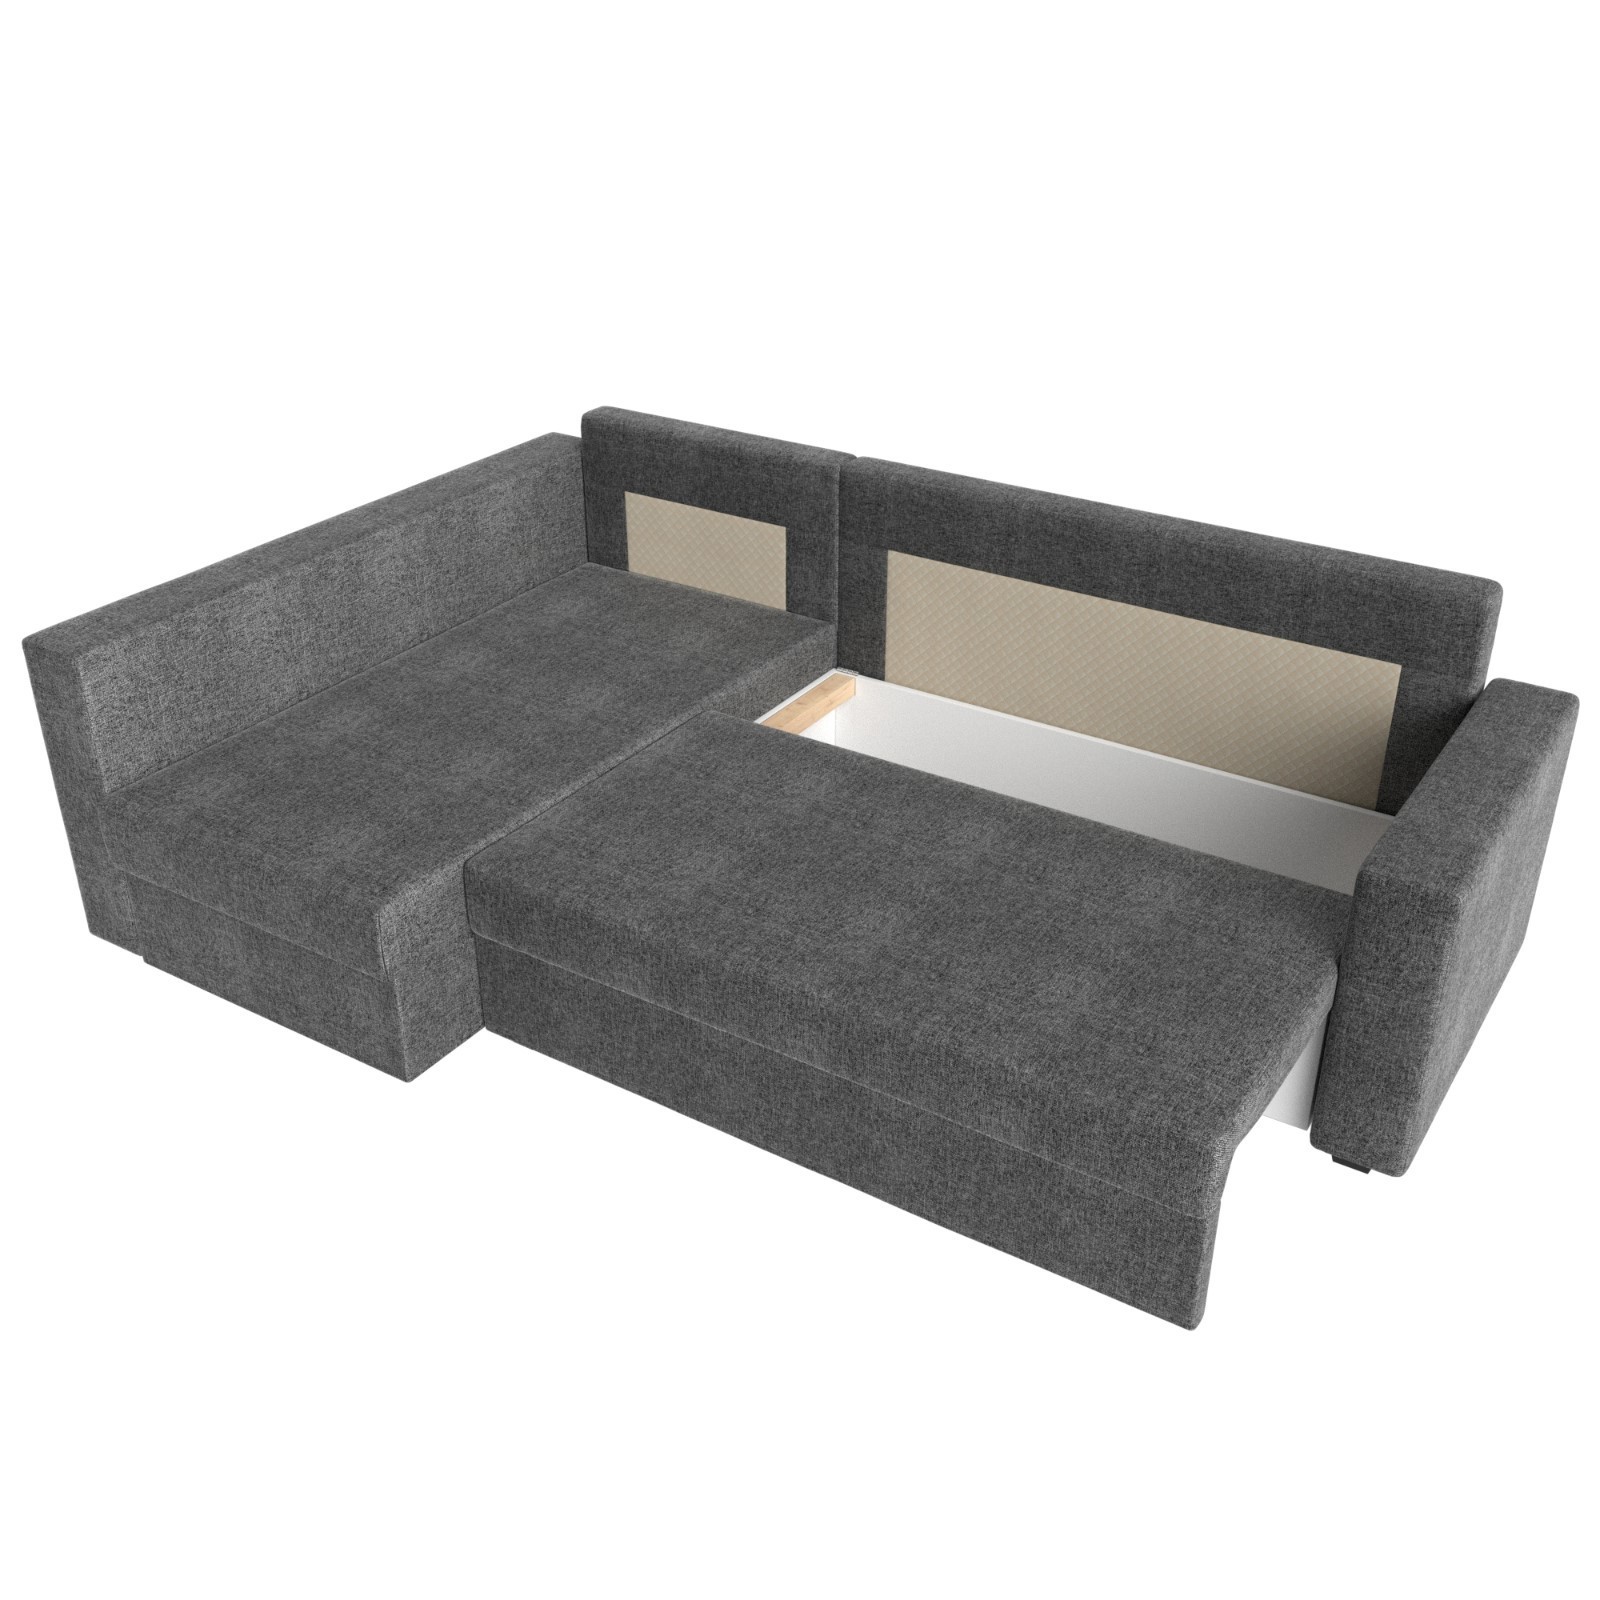 Купить Угловой диван «Мансберг», механизм еврокнижка, угол левый, рогожка,цвет серый (9134960) в Крыму, цены, отзывы, характеристики